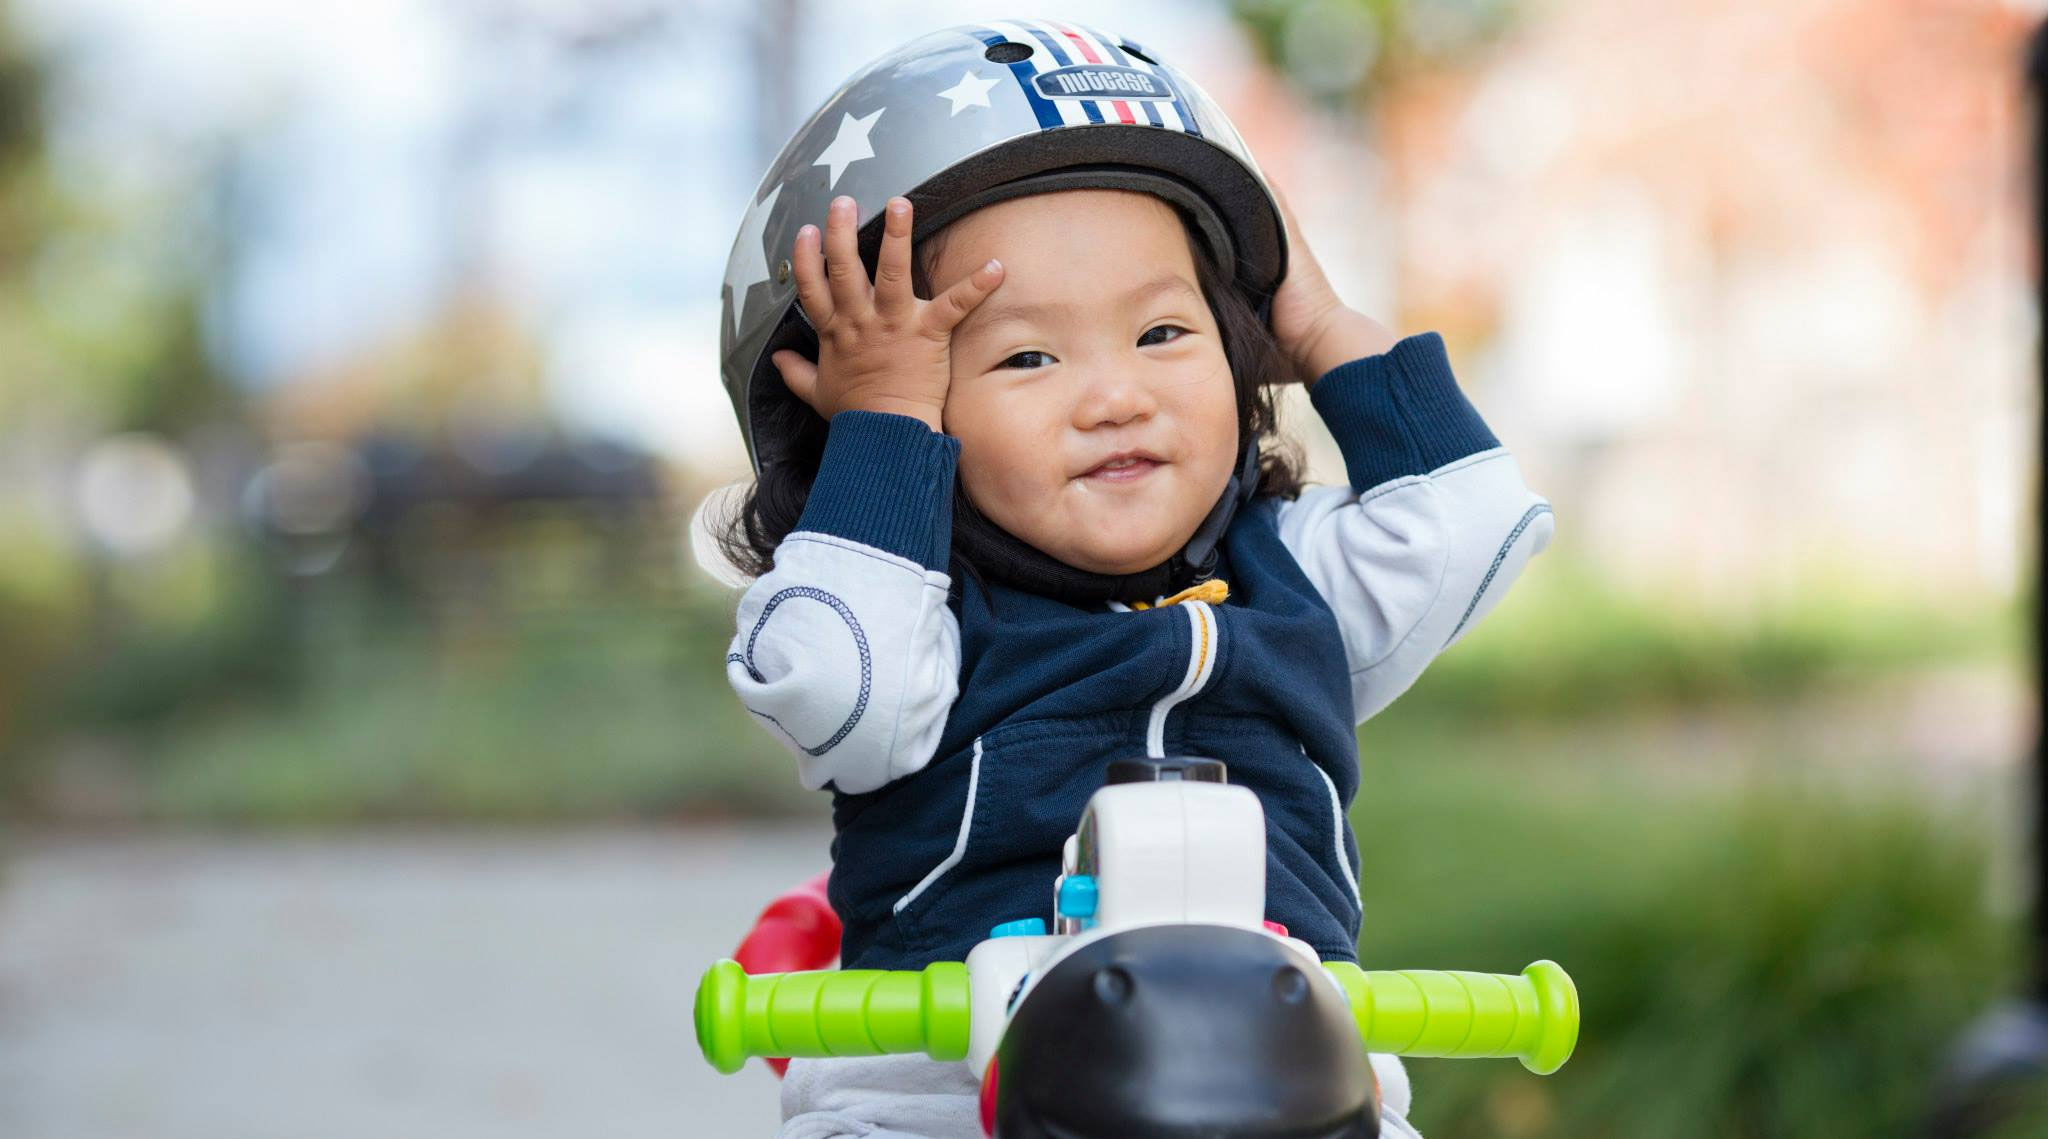 toddler bike helmet